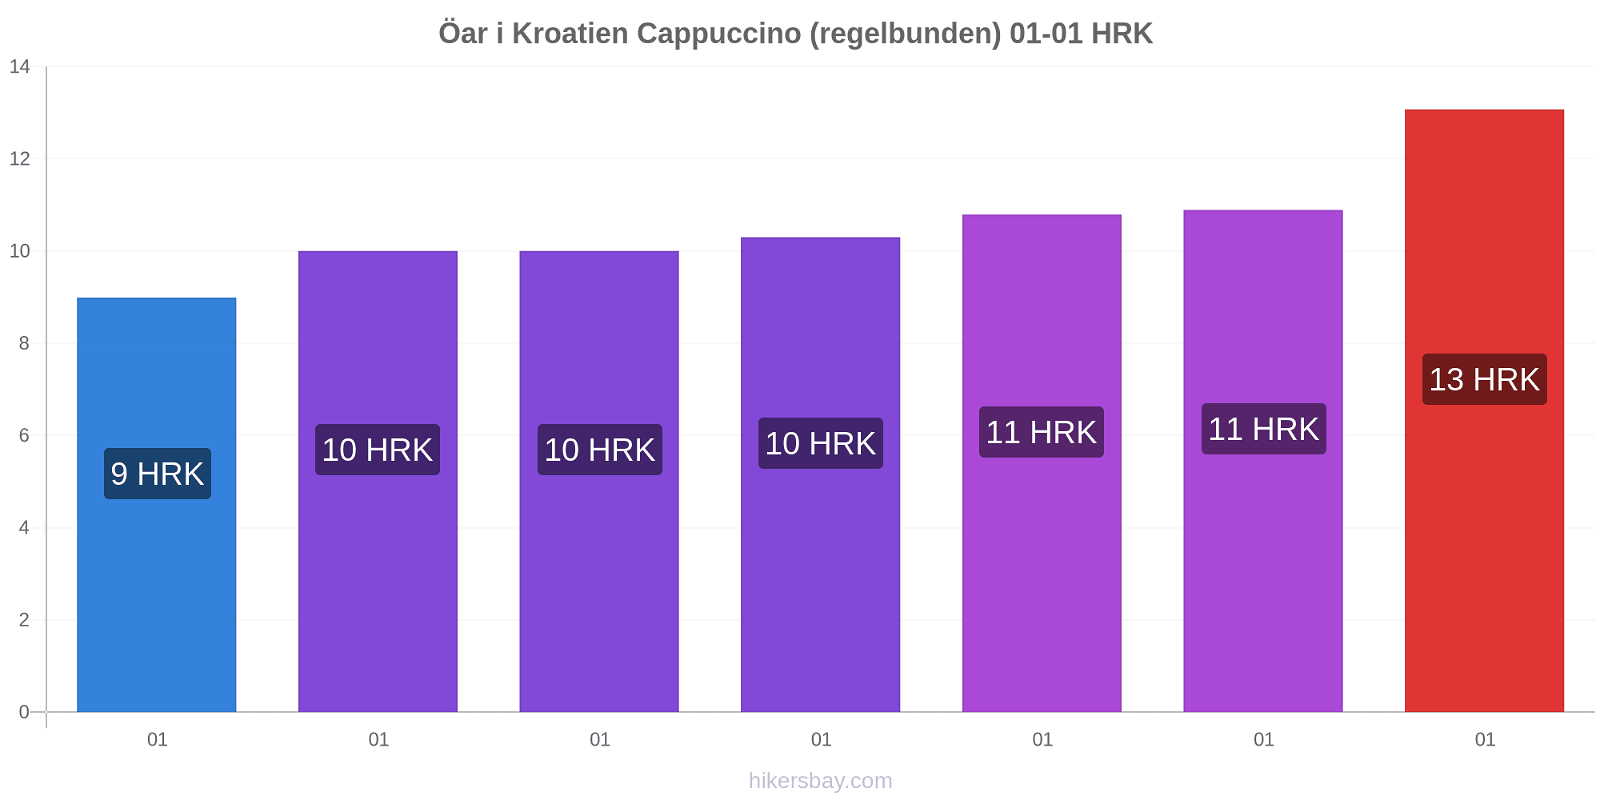 Öar i Kroatien prisförändringar Cappuccino (regelbunden) hikersbay.com